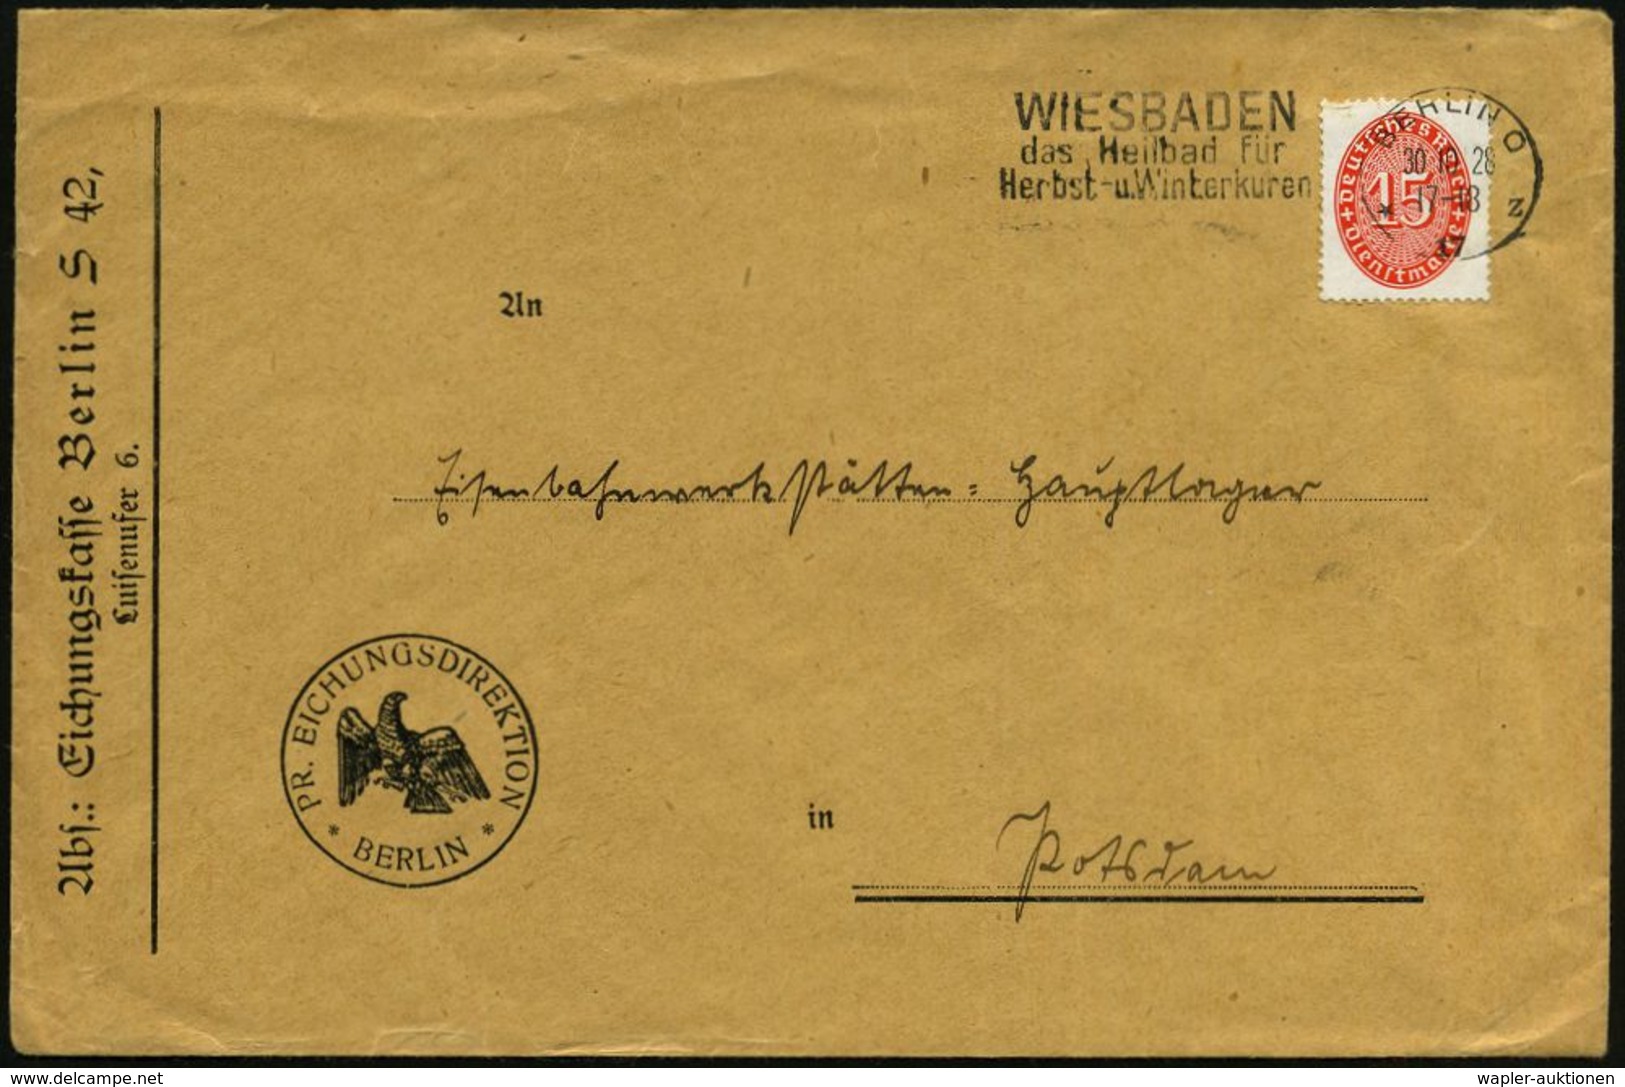 WIEGEN & MESSEN / WAAGE / METER : Berlin S 42 1928 (30.10.) Dienst-Bf.: PR. EICHUNGSDIREKTION/Eichungskasse Berlin (preu - Non Classificati